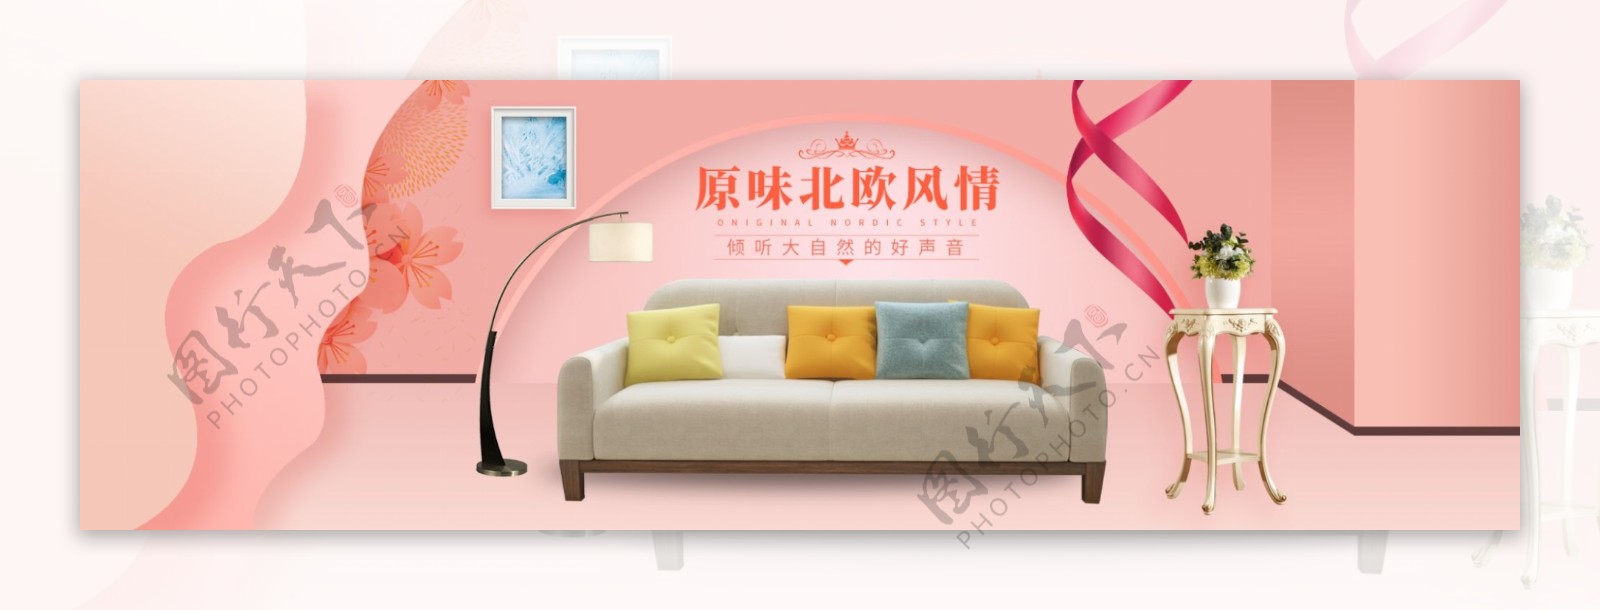 清新时尚家具建材沙发全屏海报